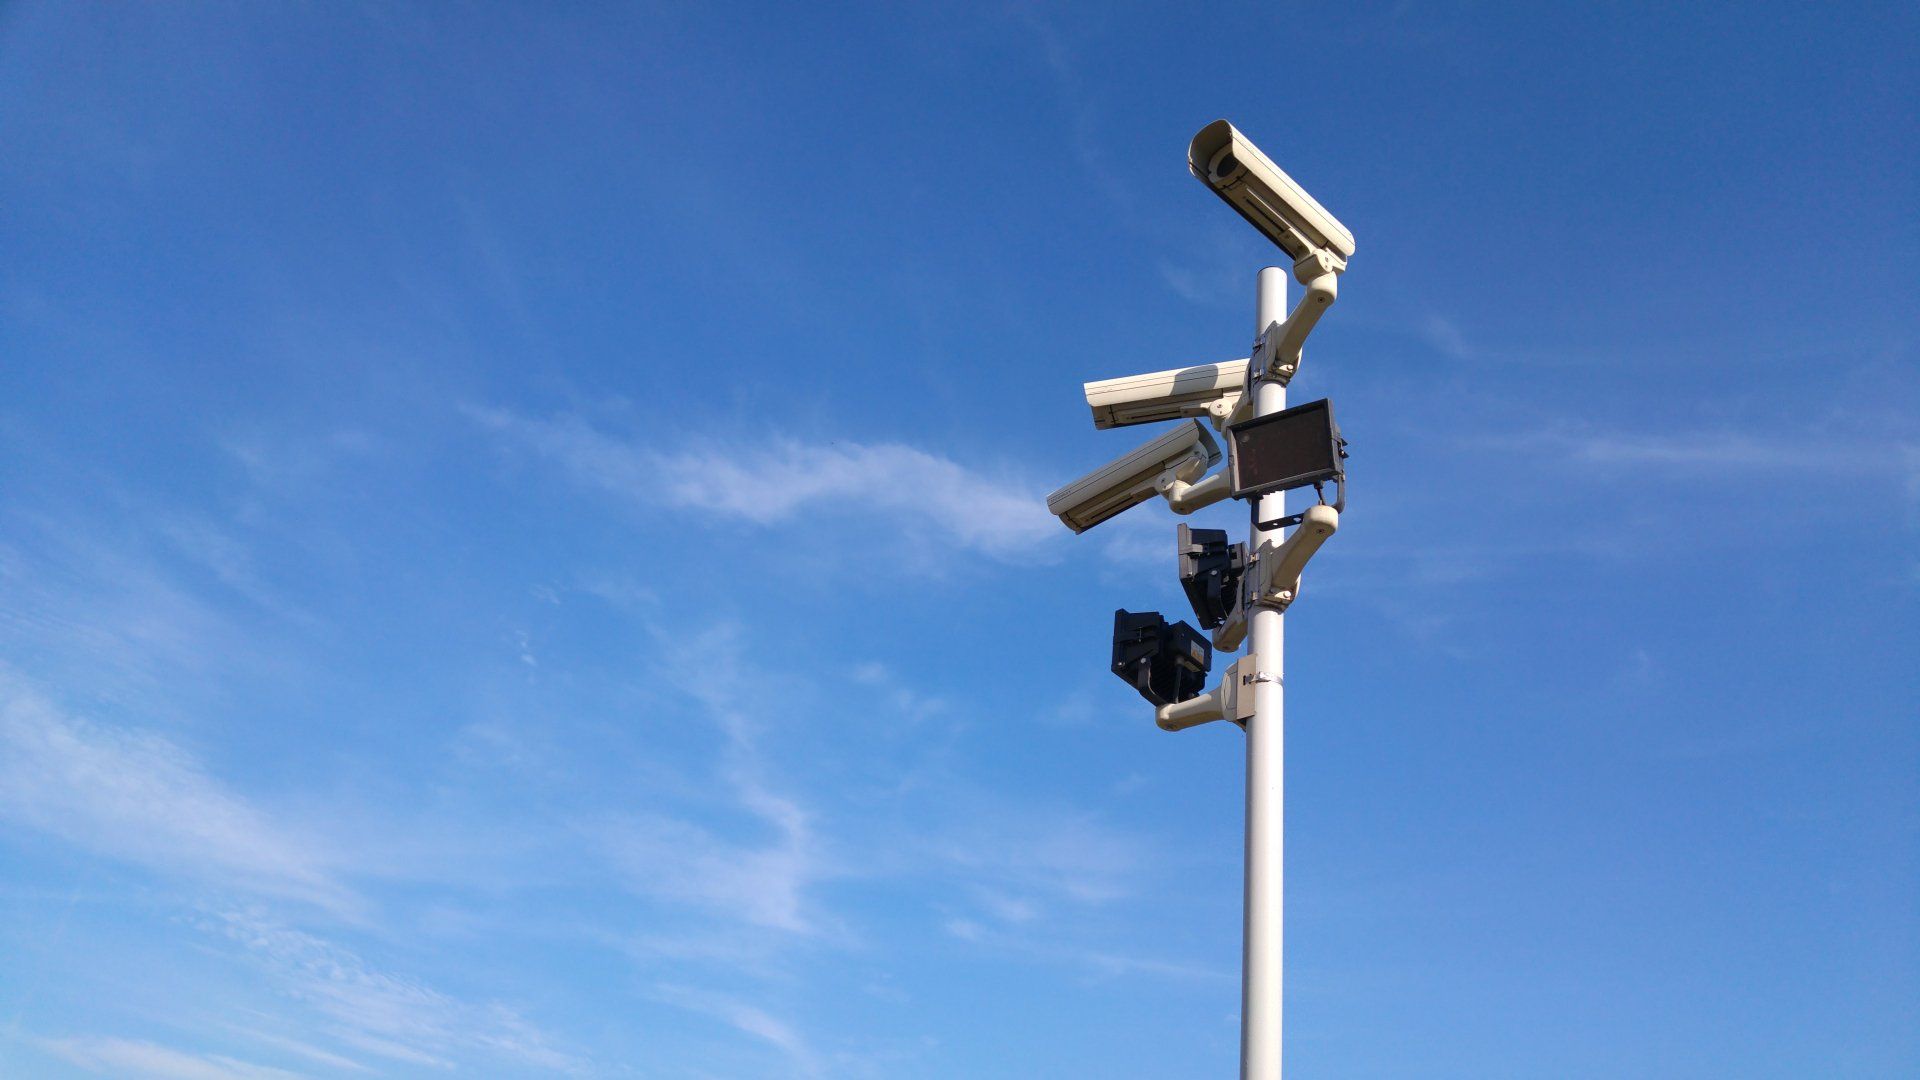 a row of security cameras on a pole against a blue sky .